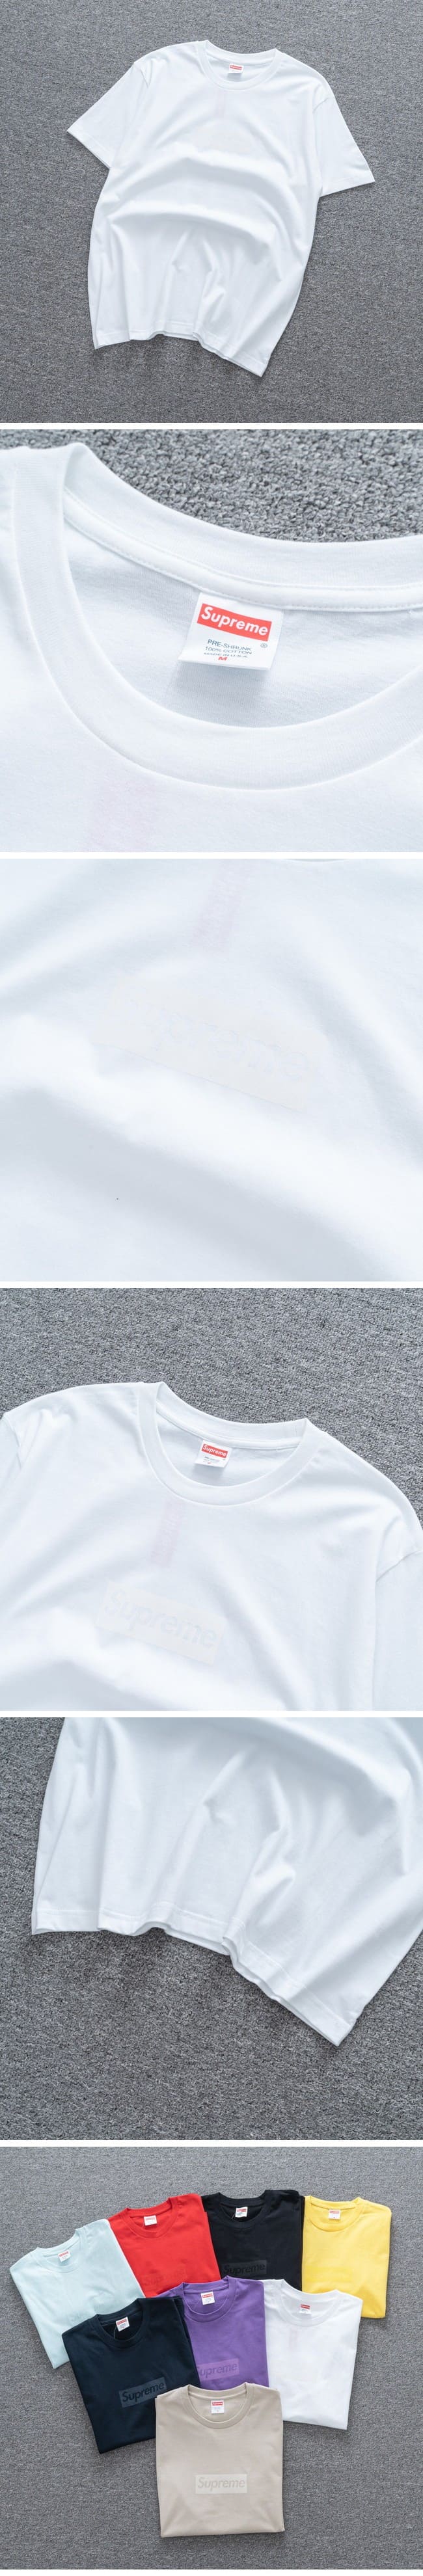 Supreme Tonal Box Logo Tee White シュプリーム トーナル ボックスロゴ Tシャツ ホワイト